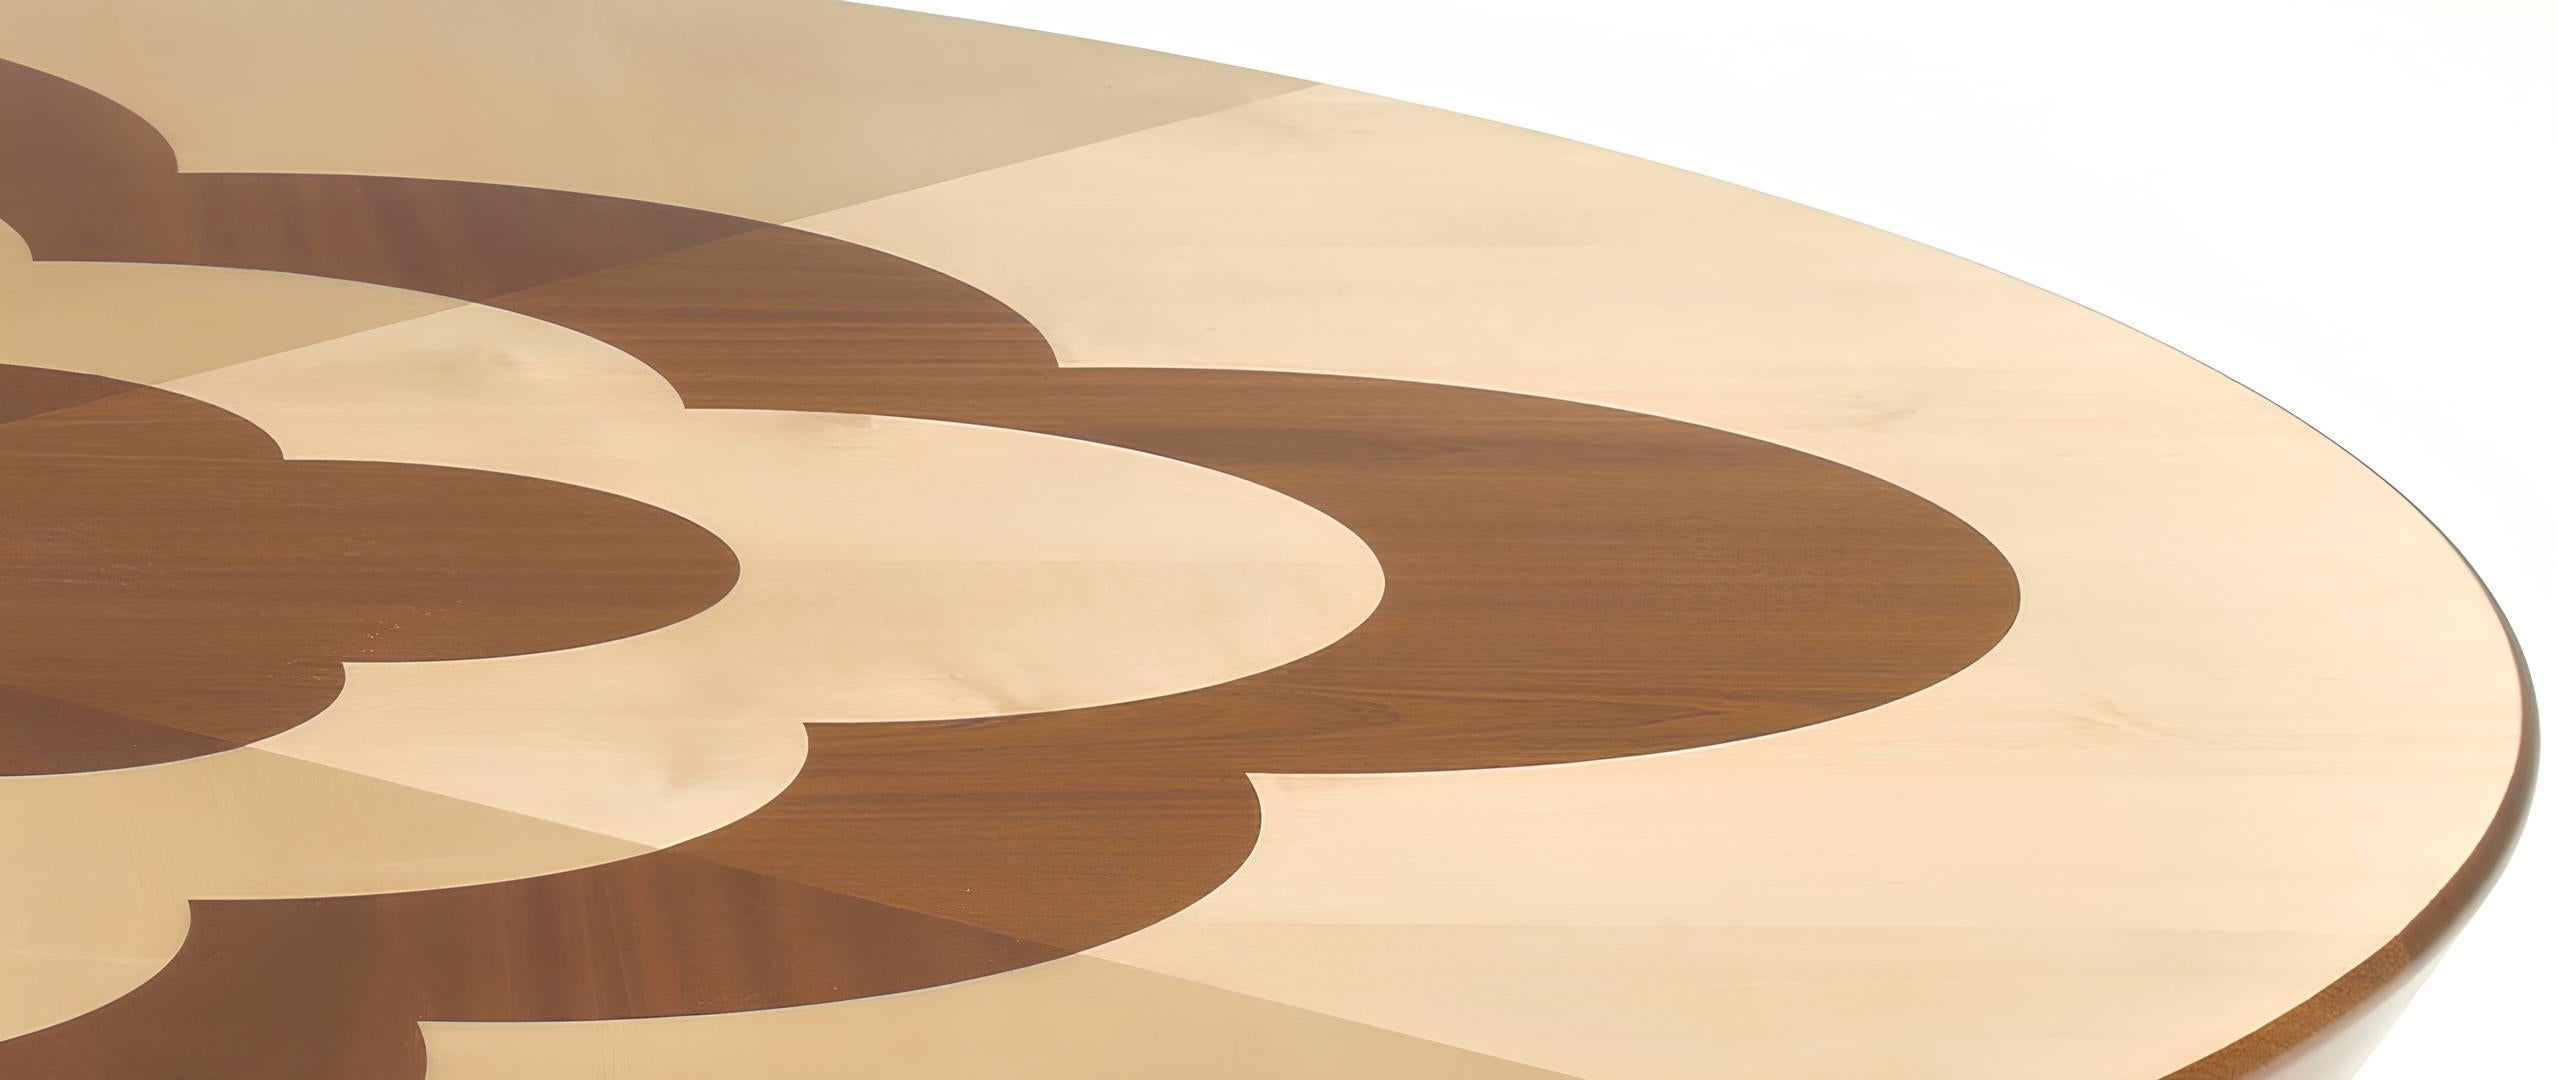 Archway CT ist ein Cocktailtisch, der von dem argentinischen Designer Cristián Mohaded im Jahr 2022 entworfen wurde. Dieser runde Tisch aus massivem Mahagoni- und Ahornholz wurde mit viel Liebe zum Detail gefertigt und weist ein exquisites